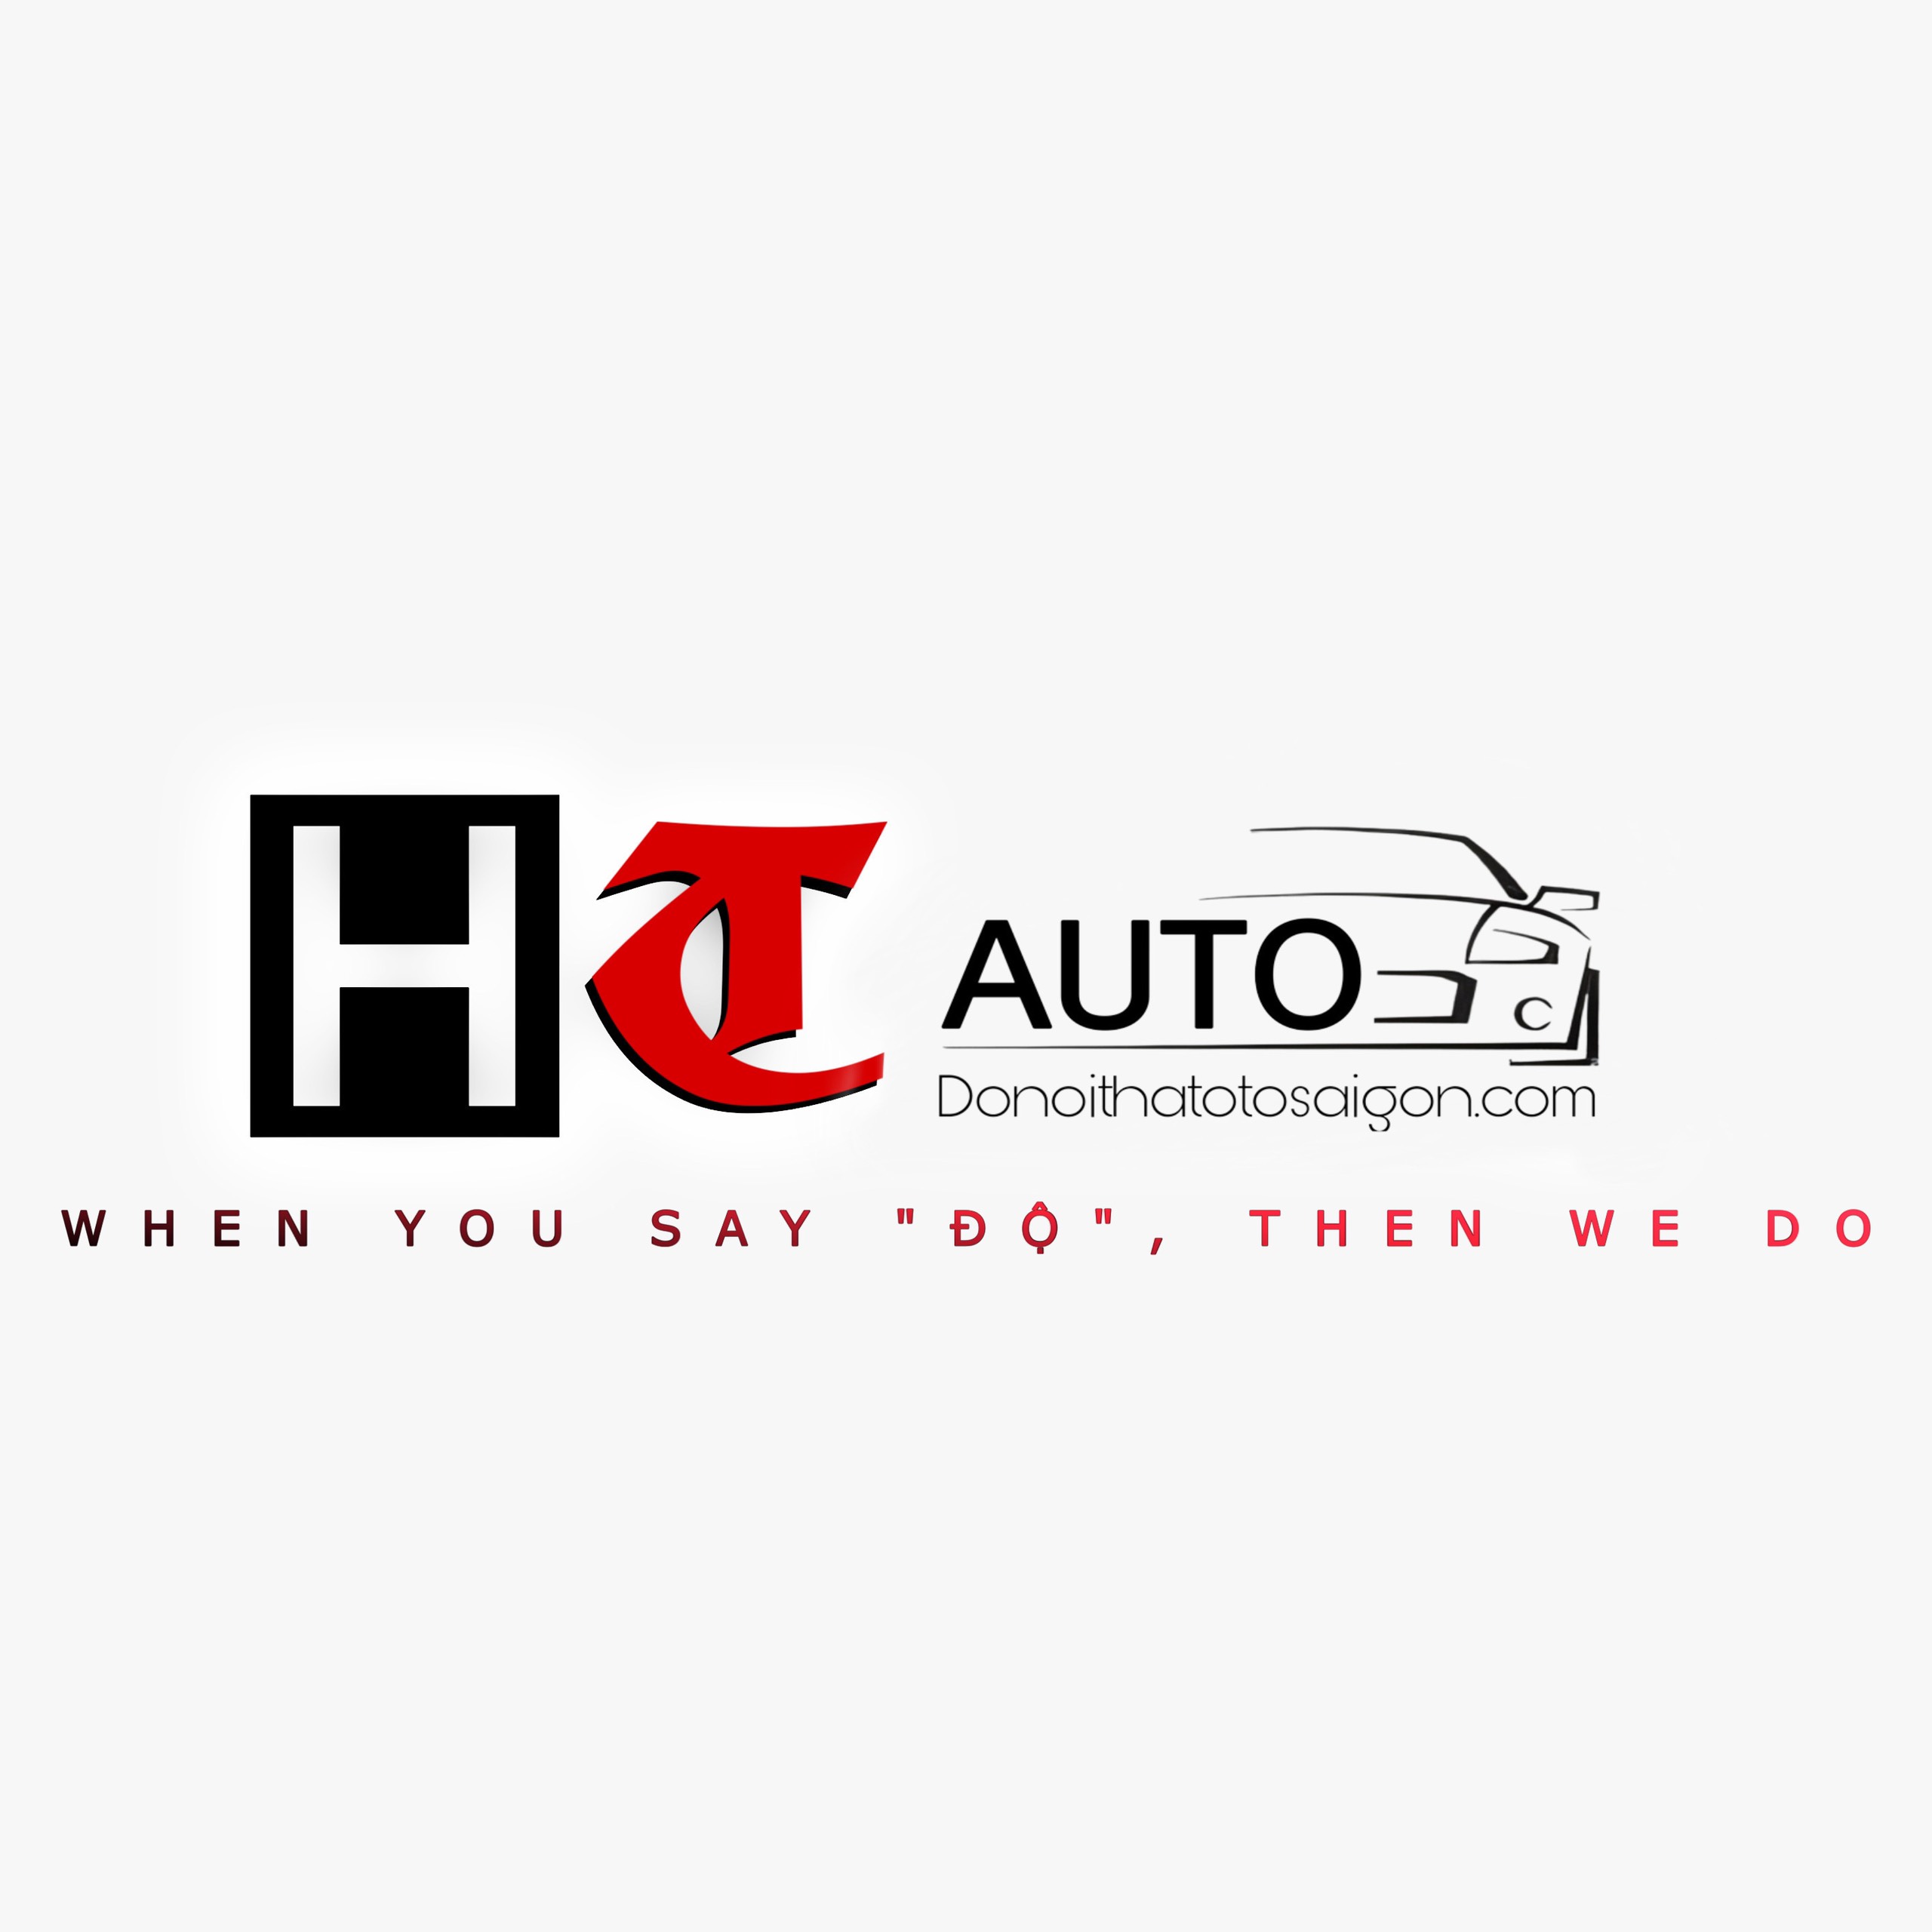 Logo - Cửa Hàng H&T Auto - Chuyên Độ Và Đổi Màu Nội Thất Ô Tô